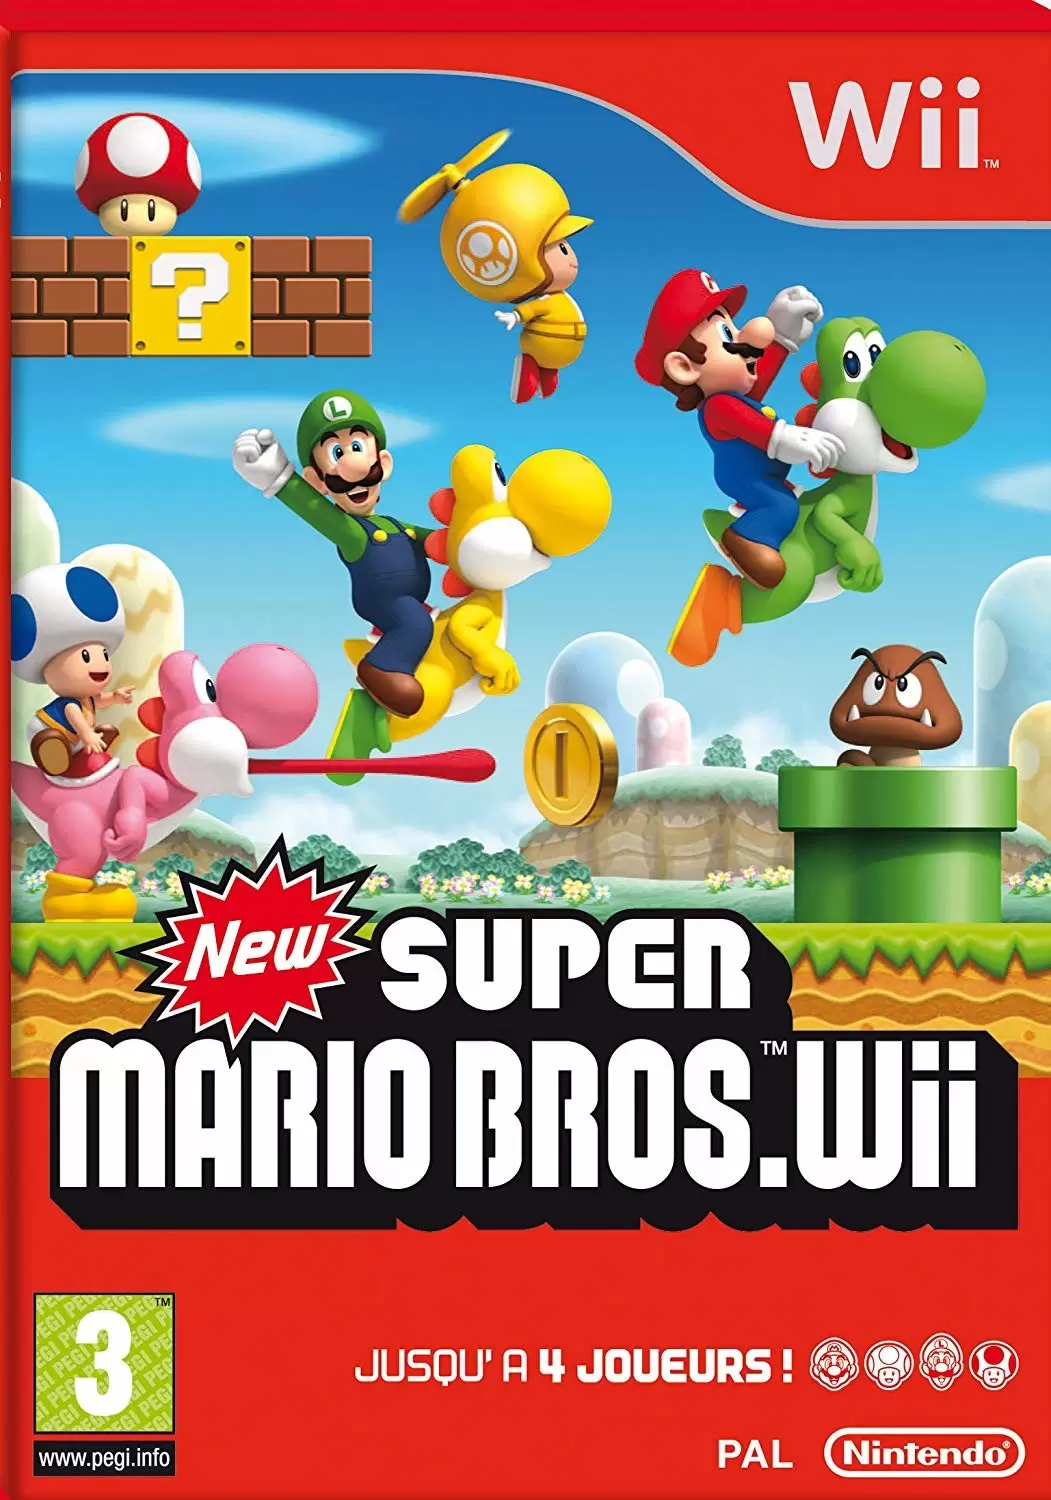 Nintendo Wii Games - New super Mario Bross Wii